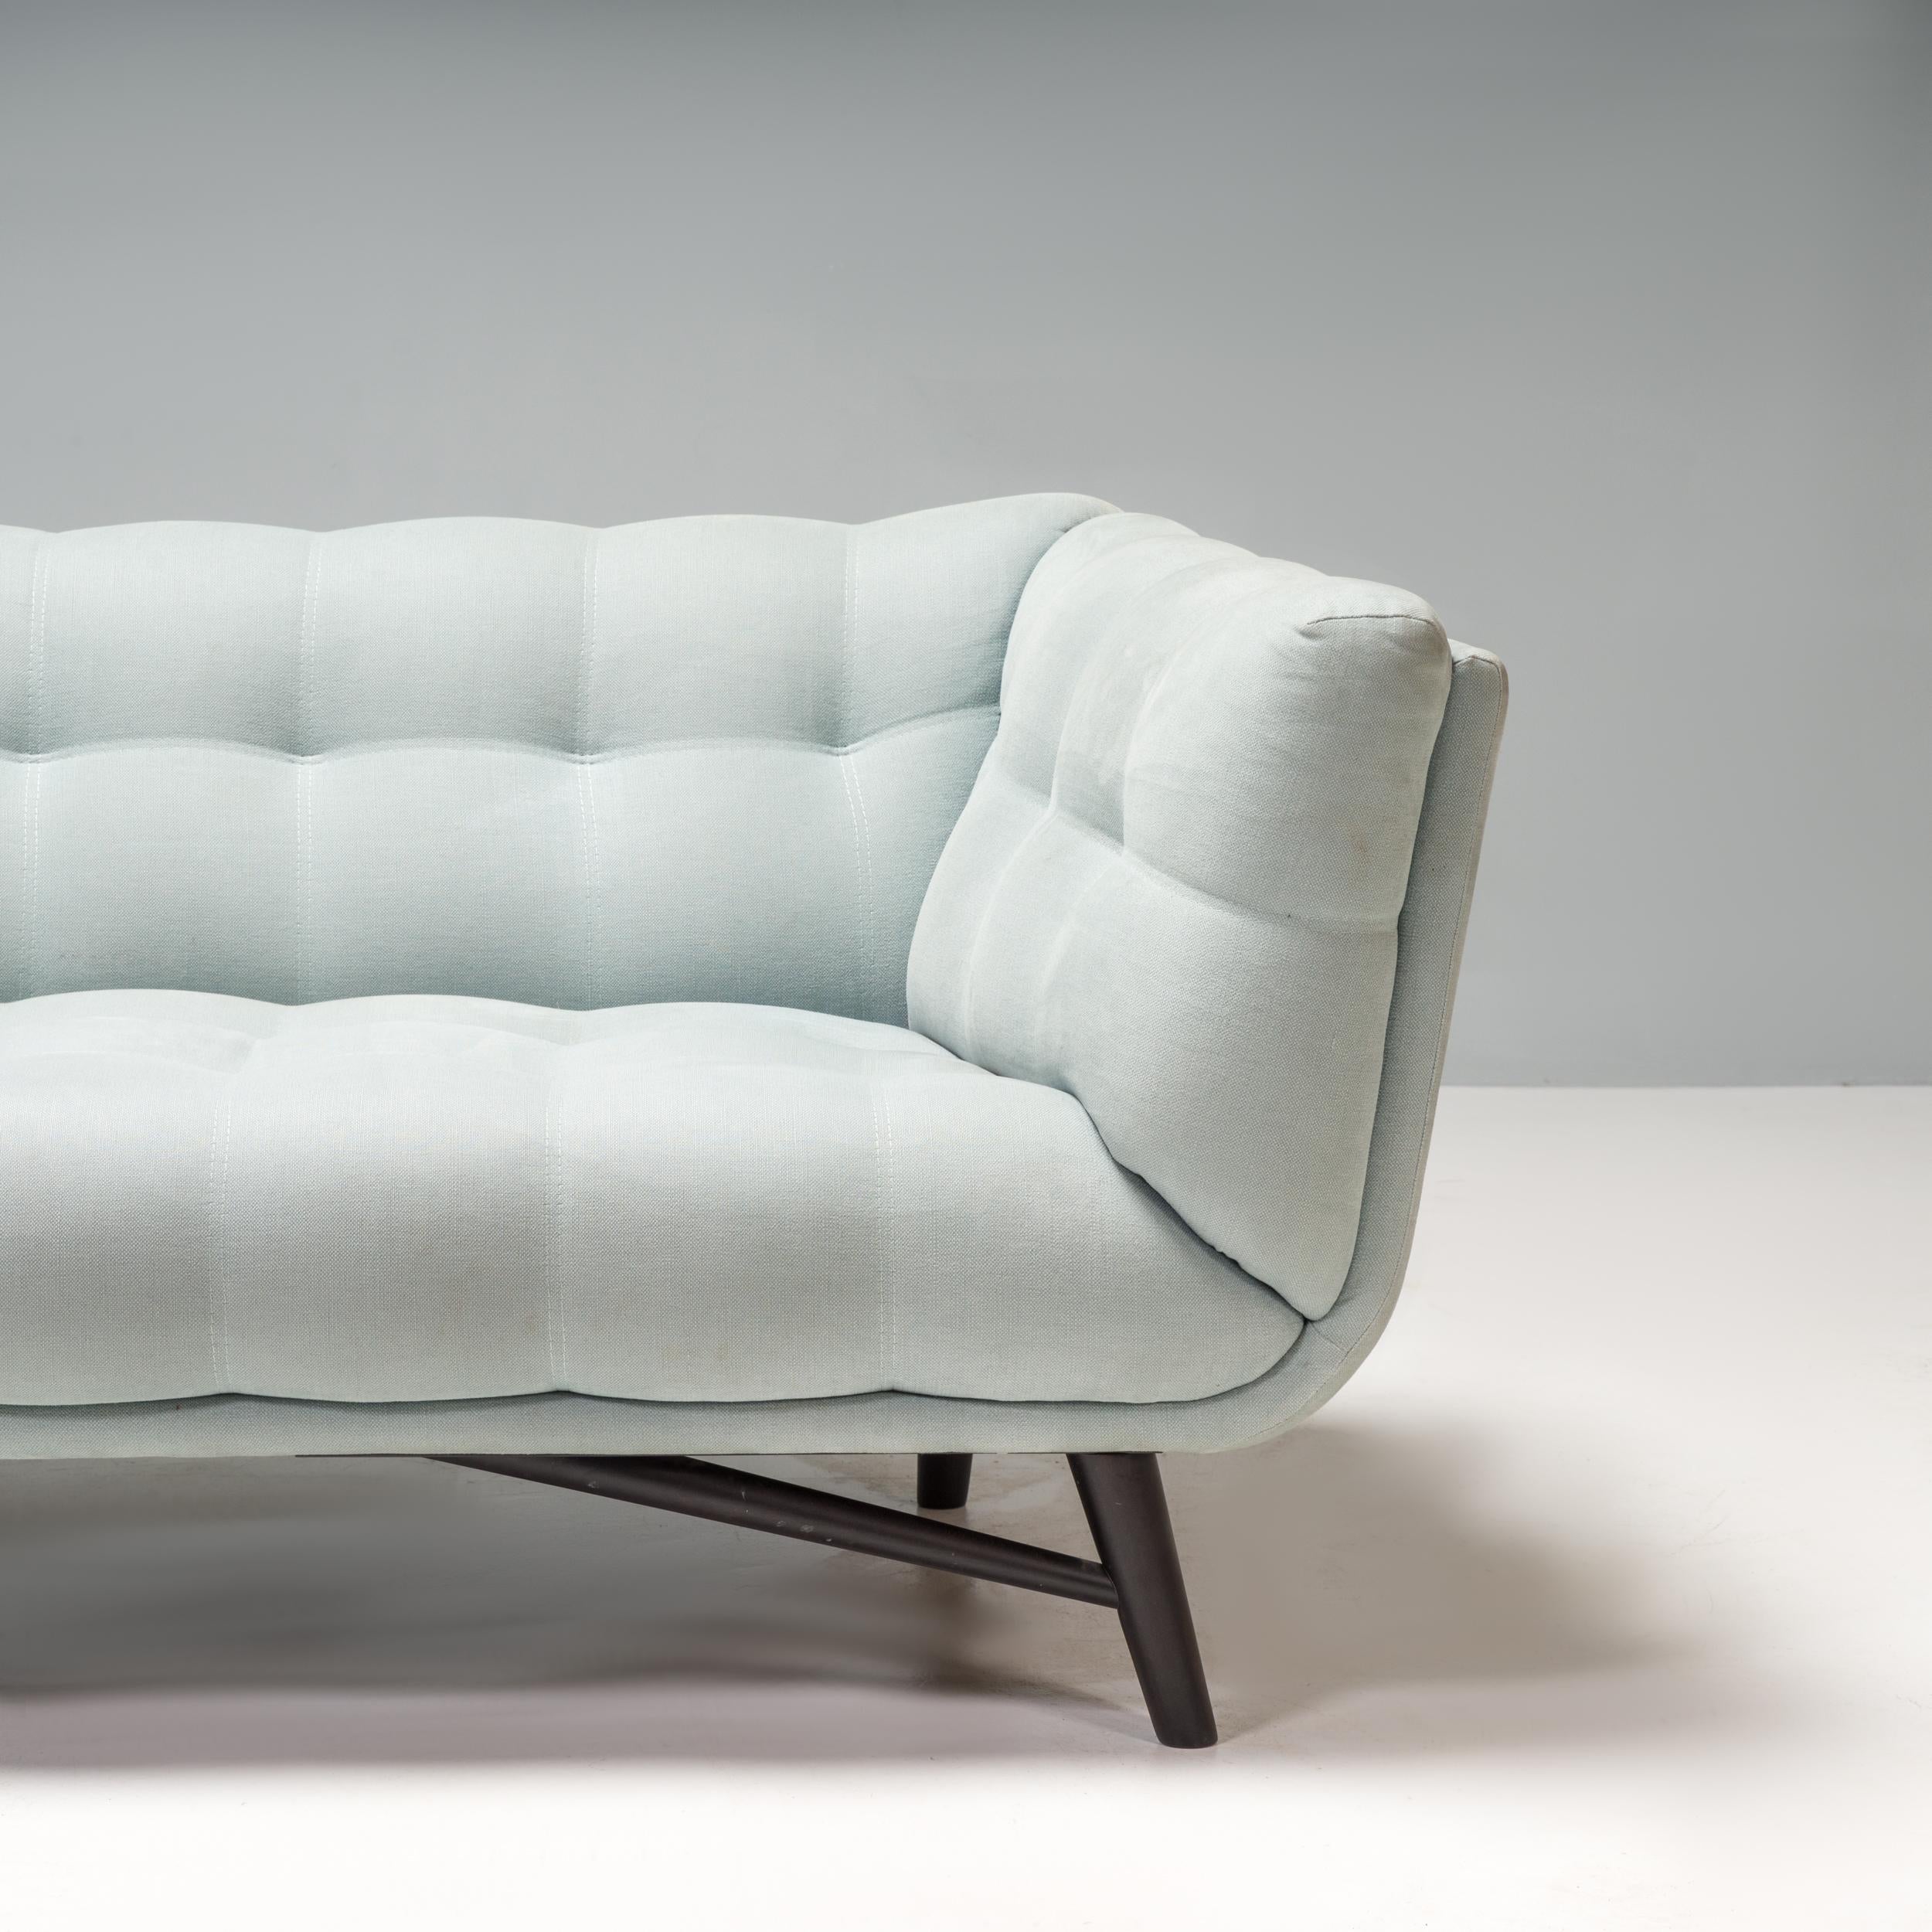 French Roche Bobois Pale Blue Fabric Profile 2.5 Seat Sofa